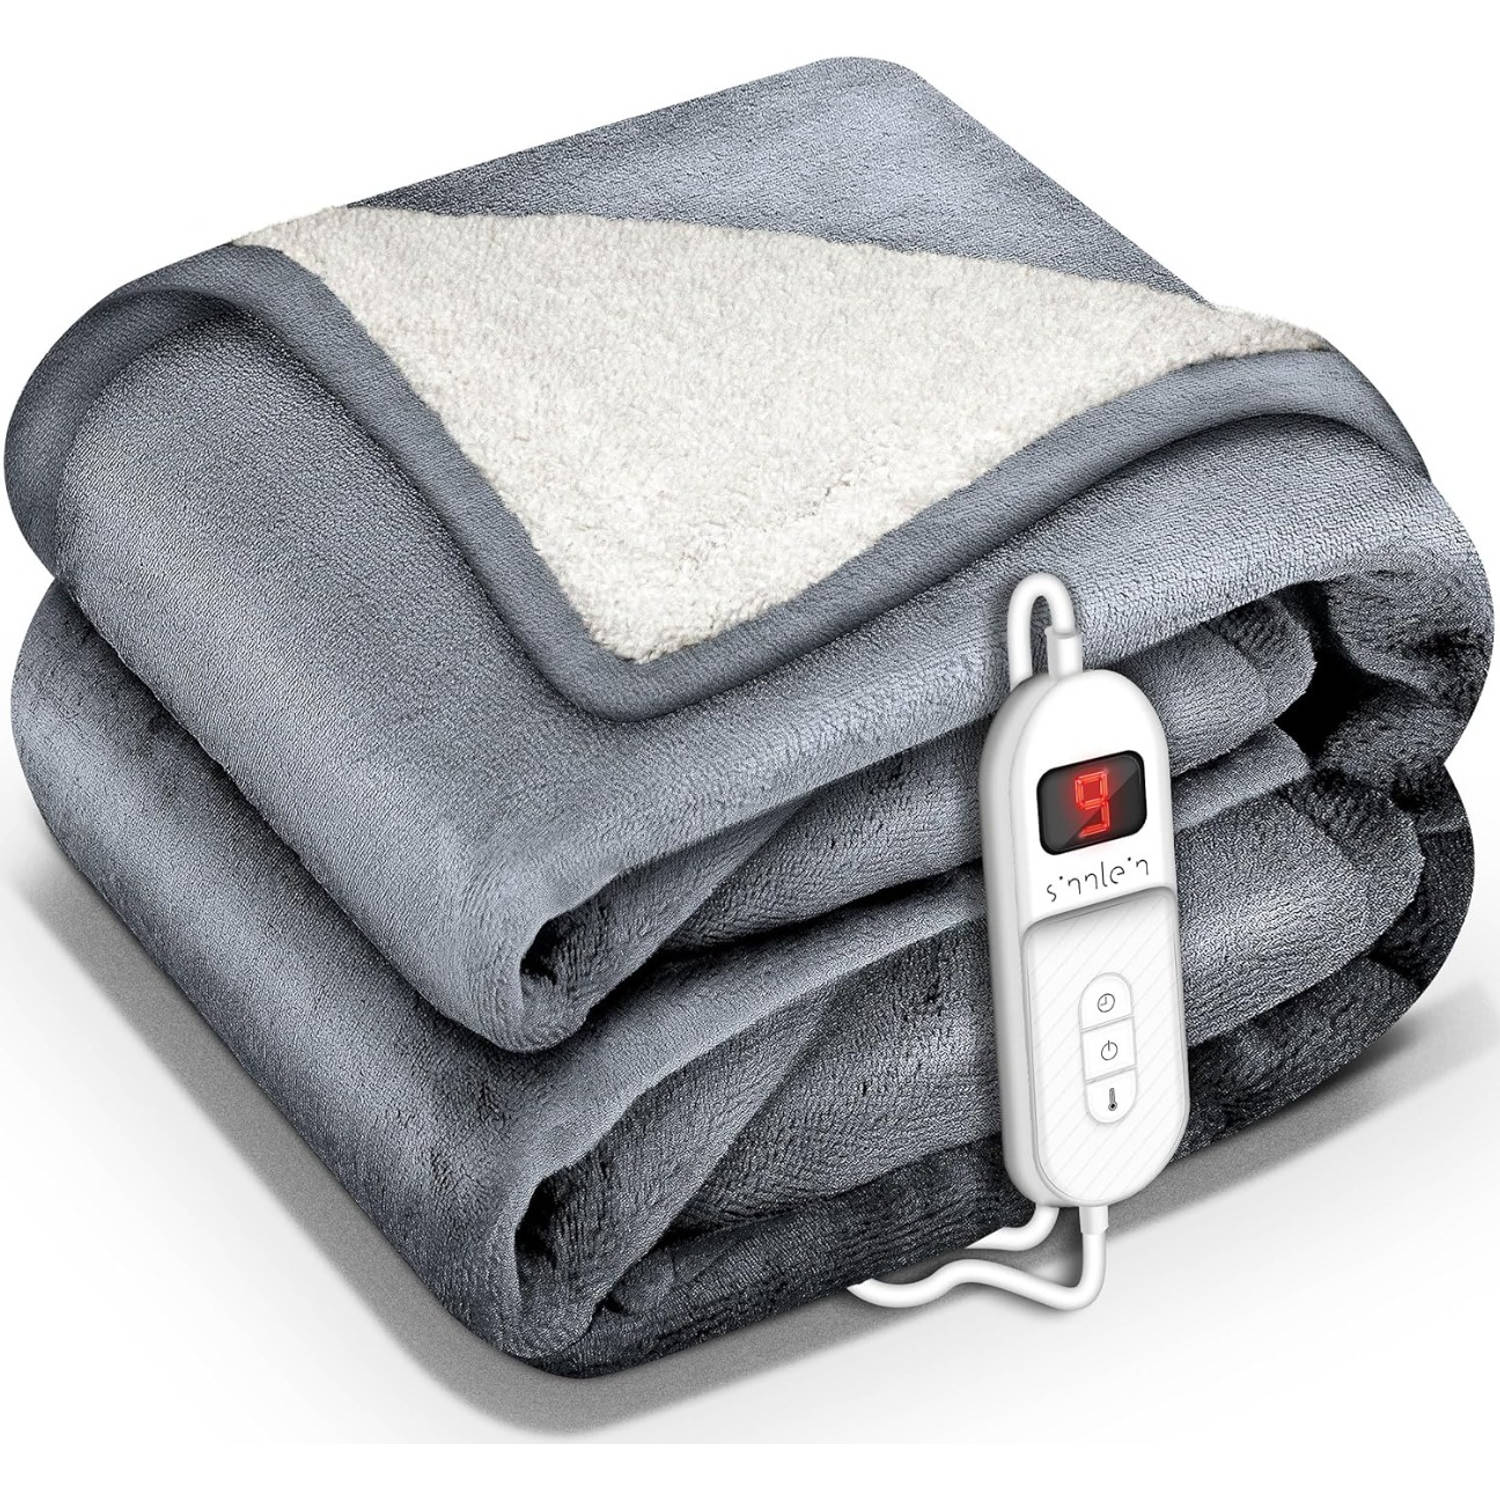 Sinnlein- Elektrische deken met automatische uitschakeling, lichtgrijs, 200 x 180 cm, warmtedeken met 9 temperatuurni...